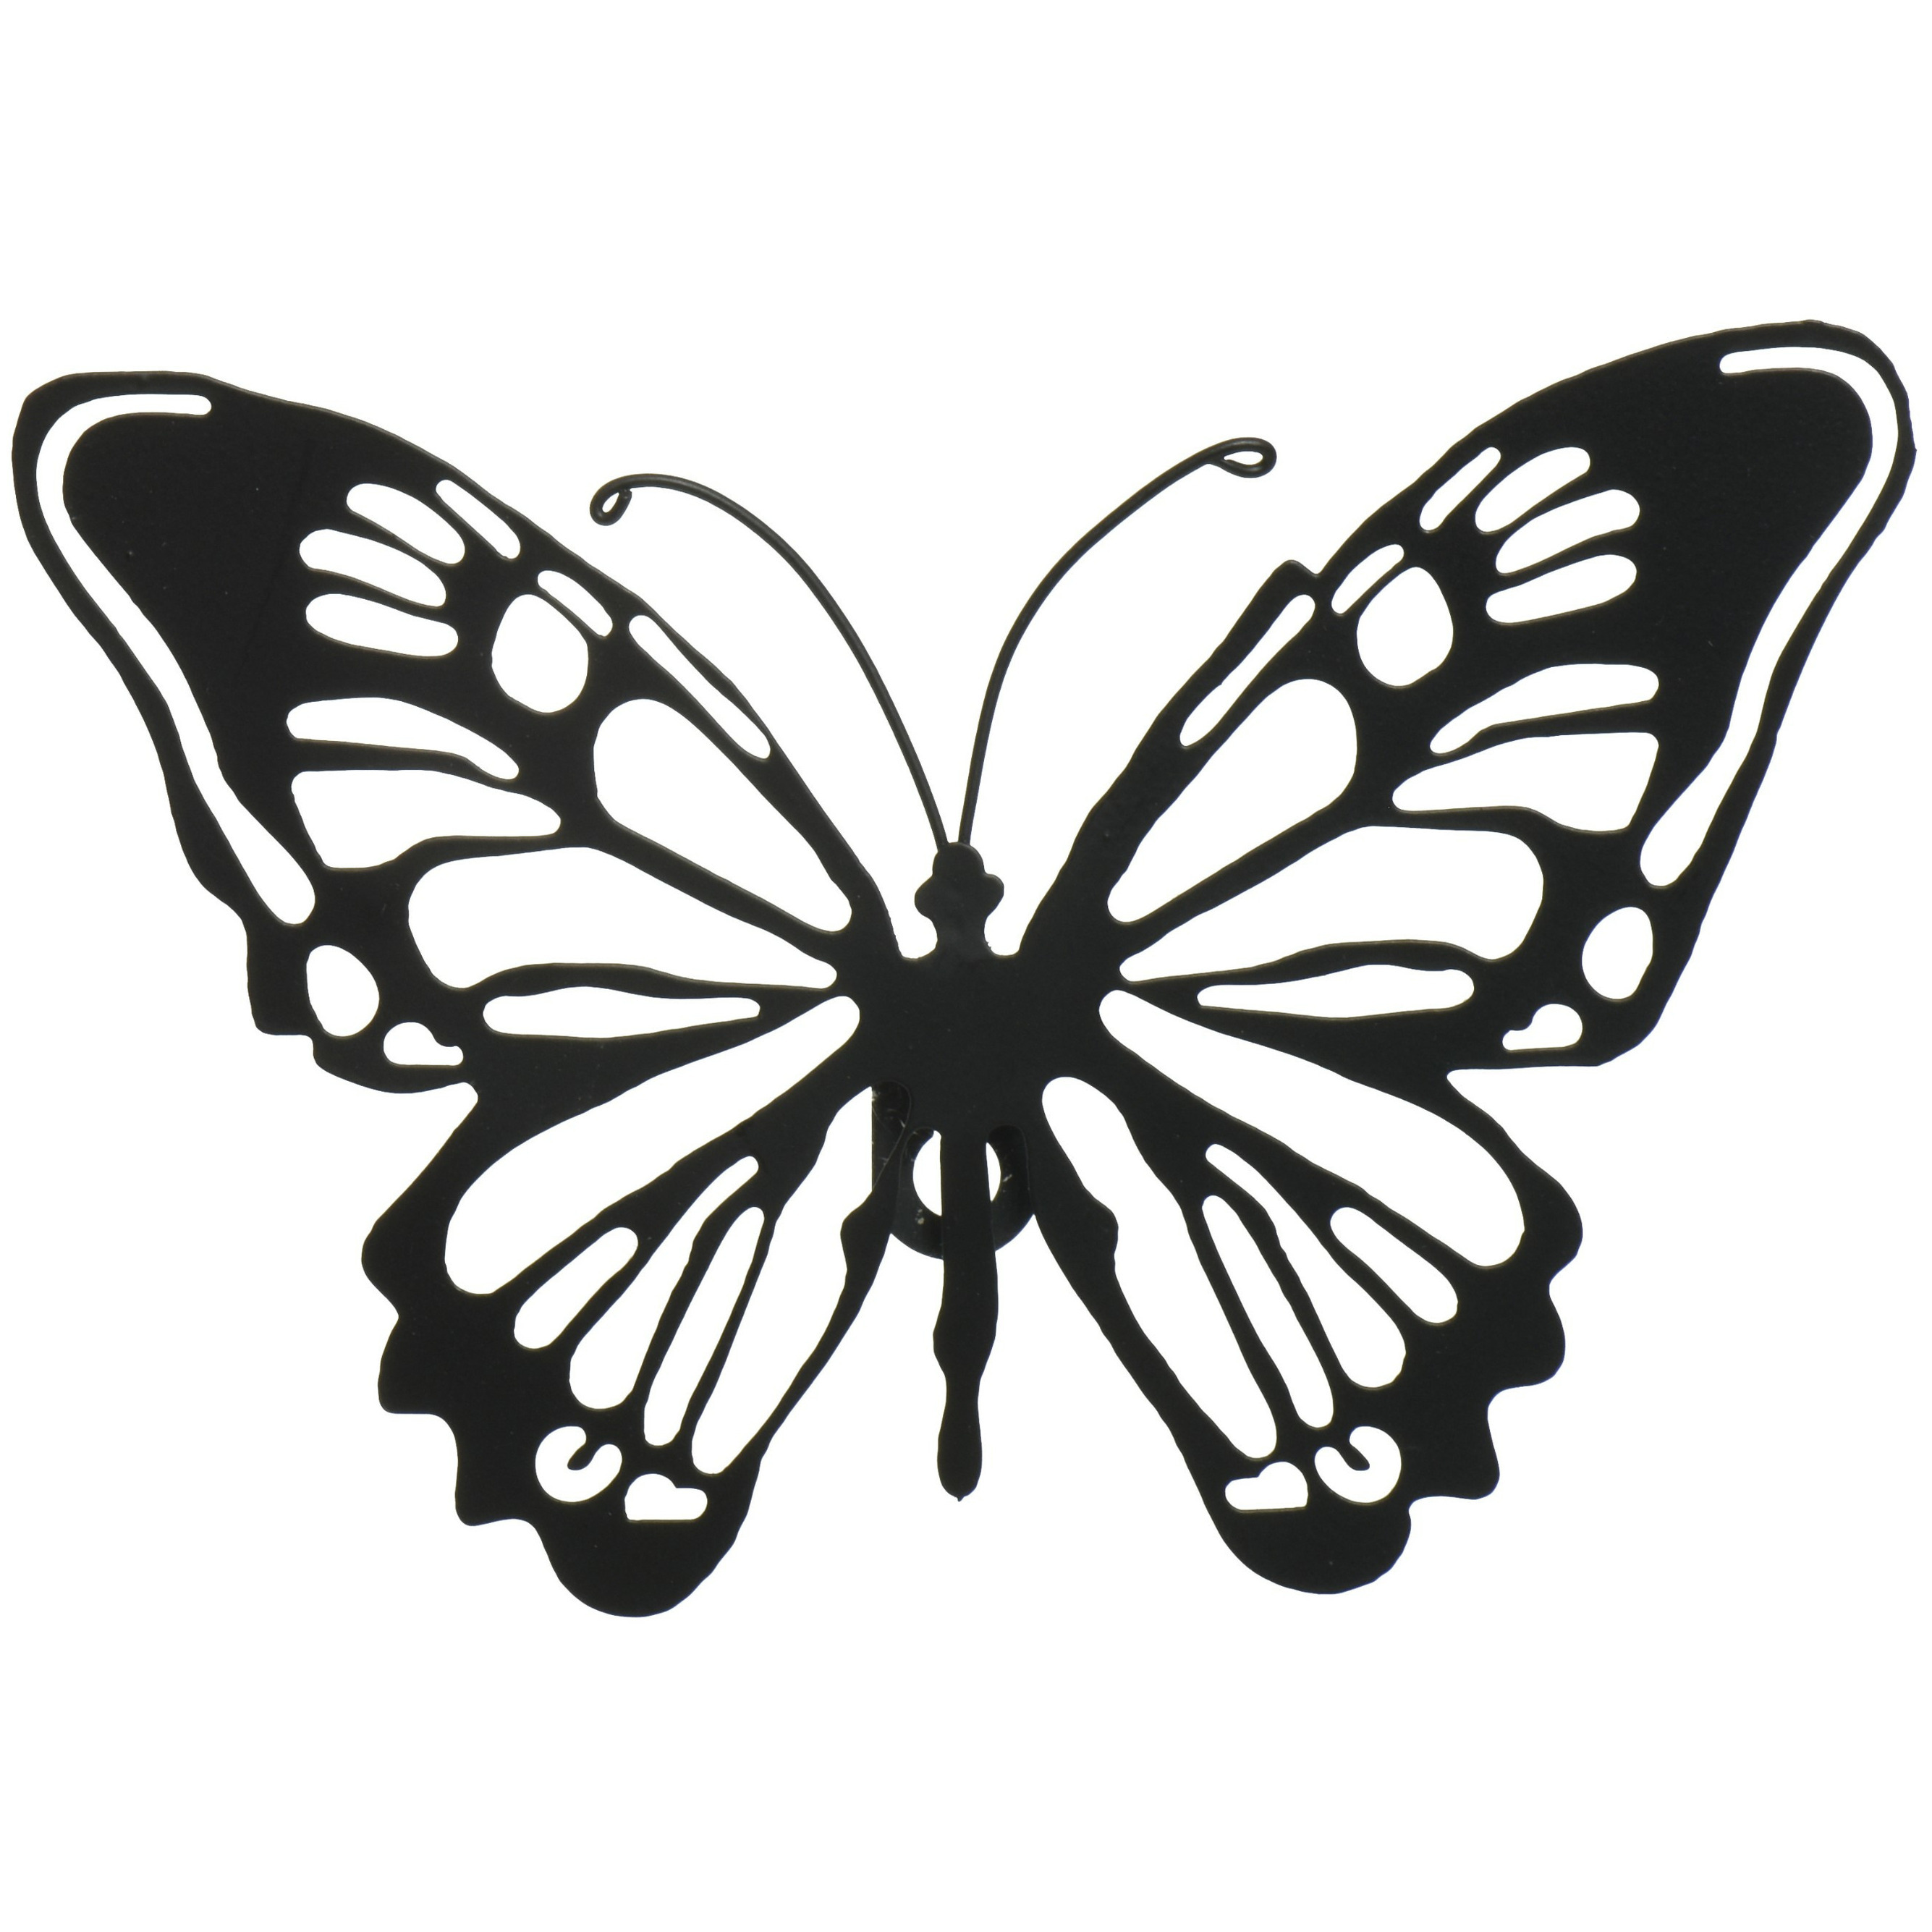 Tuin wanddecoratie vlinder metaal zwart 37 x 24 cm